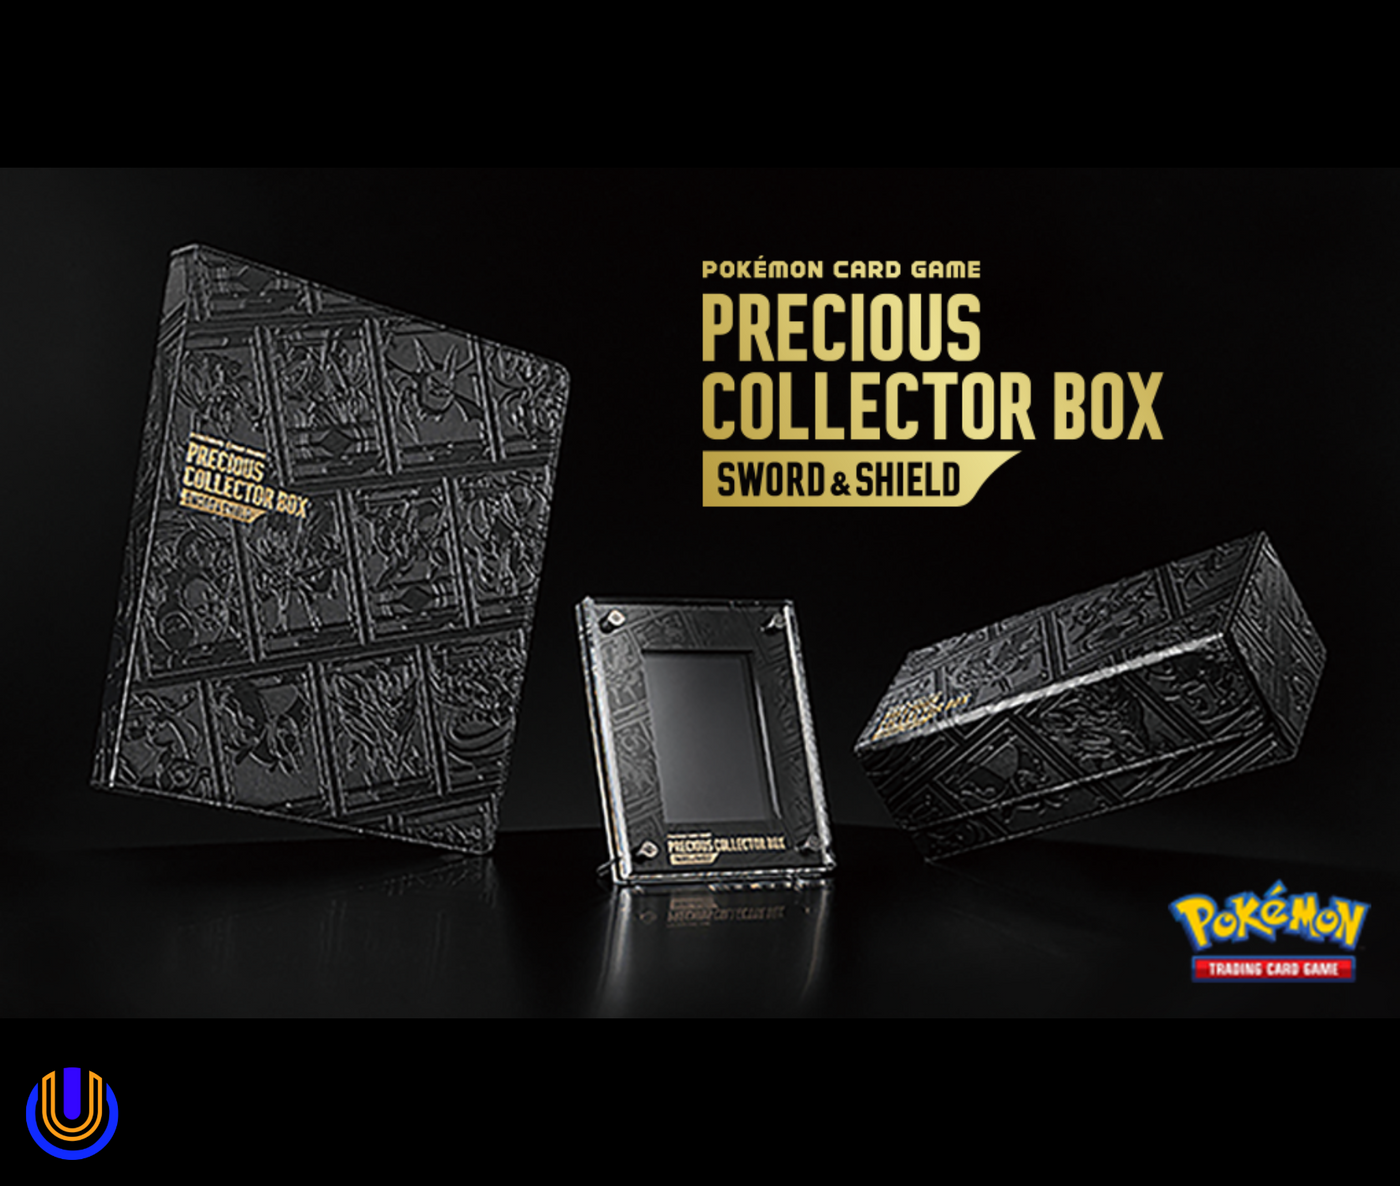 Pokémon TCG: Sword & Shield Precious Collector Box